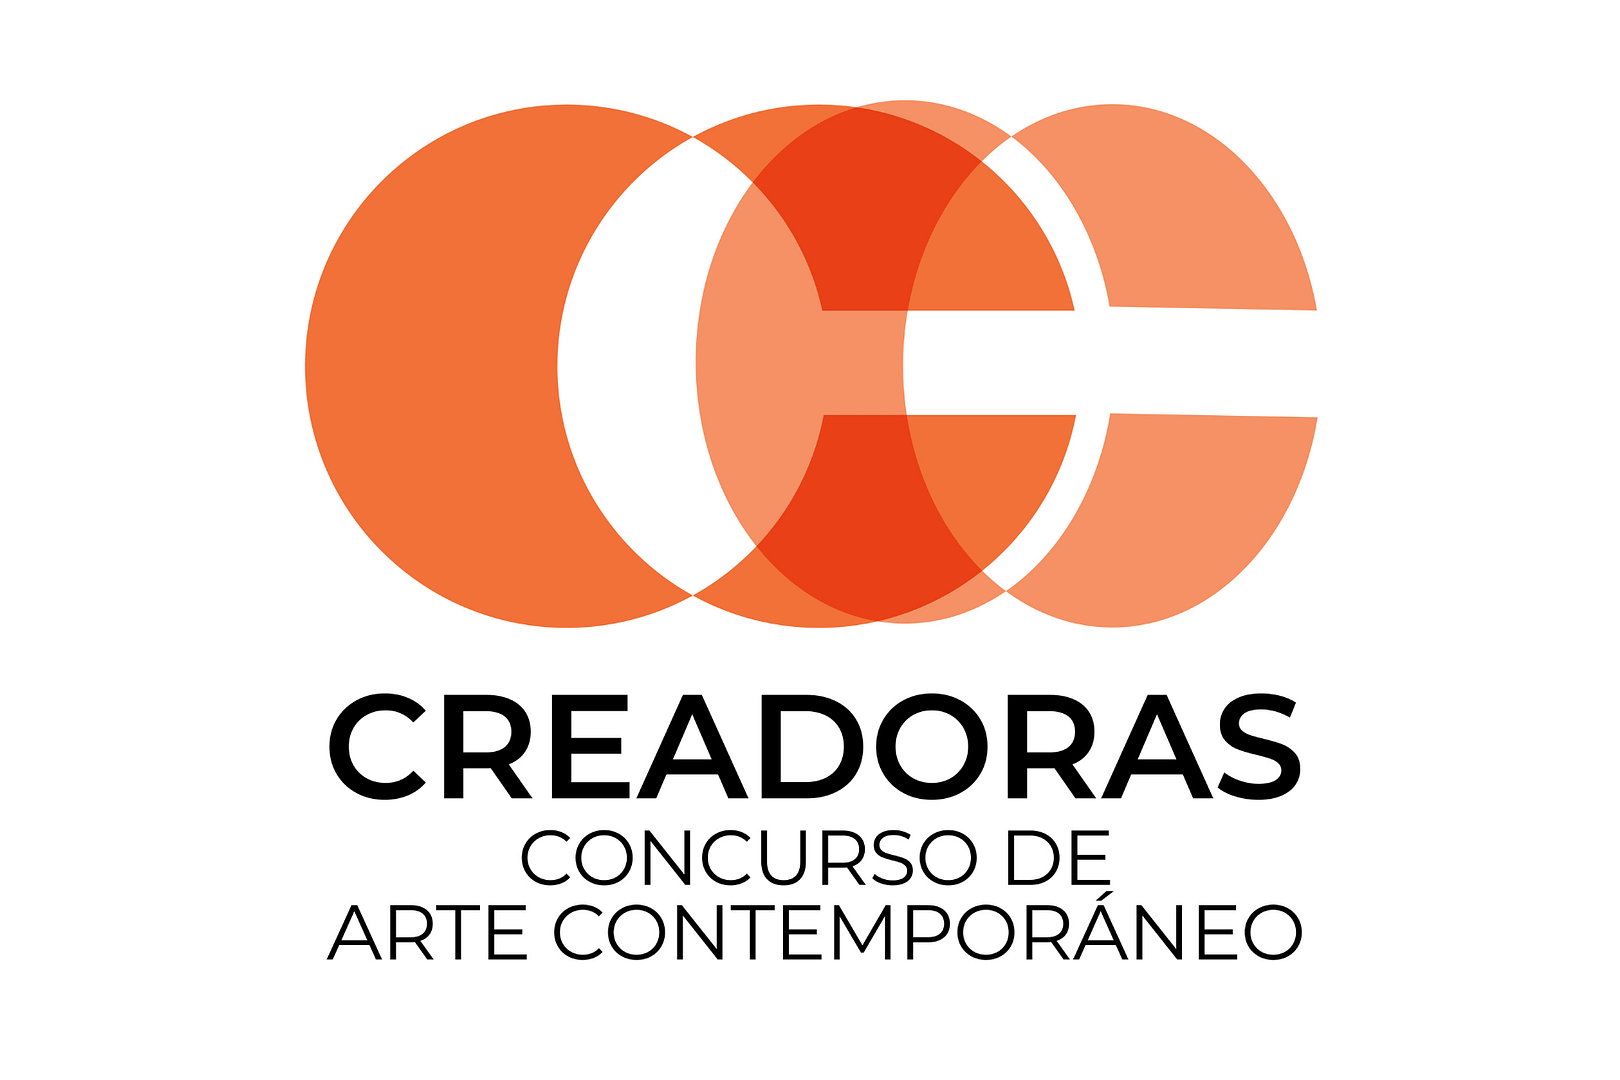 Logo del Proyecto creadoras que consiste en 3 letras C entrelazadas de color naranja